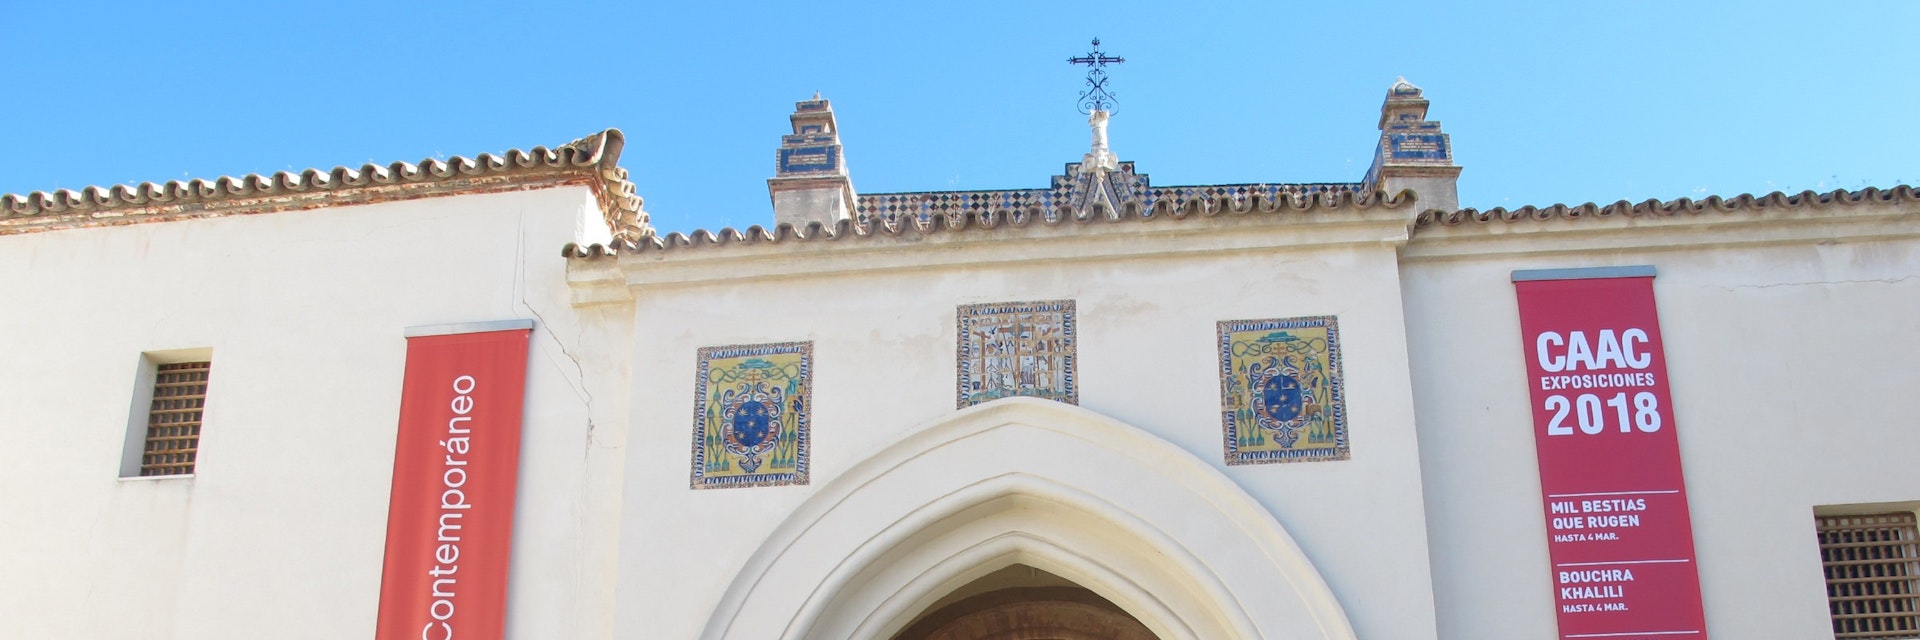 Centro Andaluz de Arte Contemporaneo (CAAC) chapel entrance banner